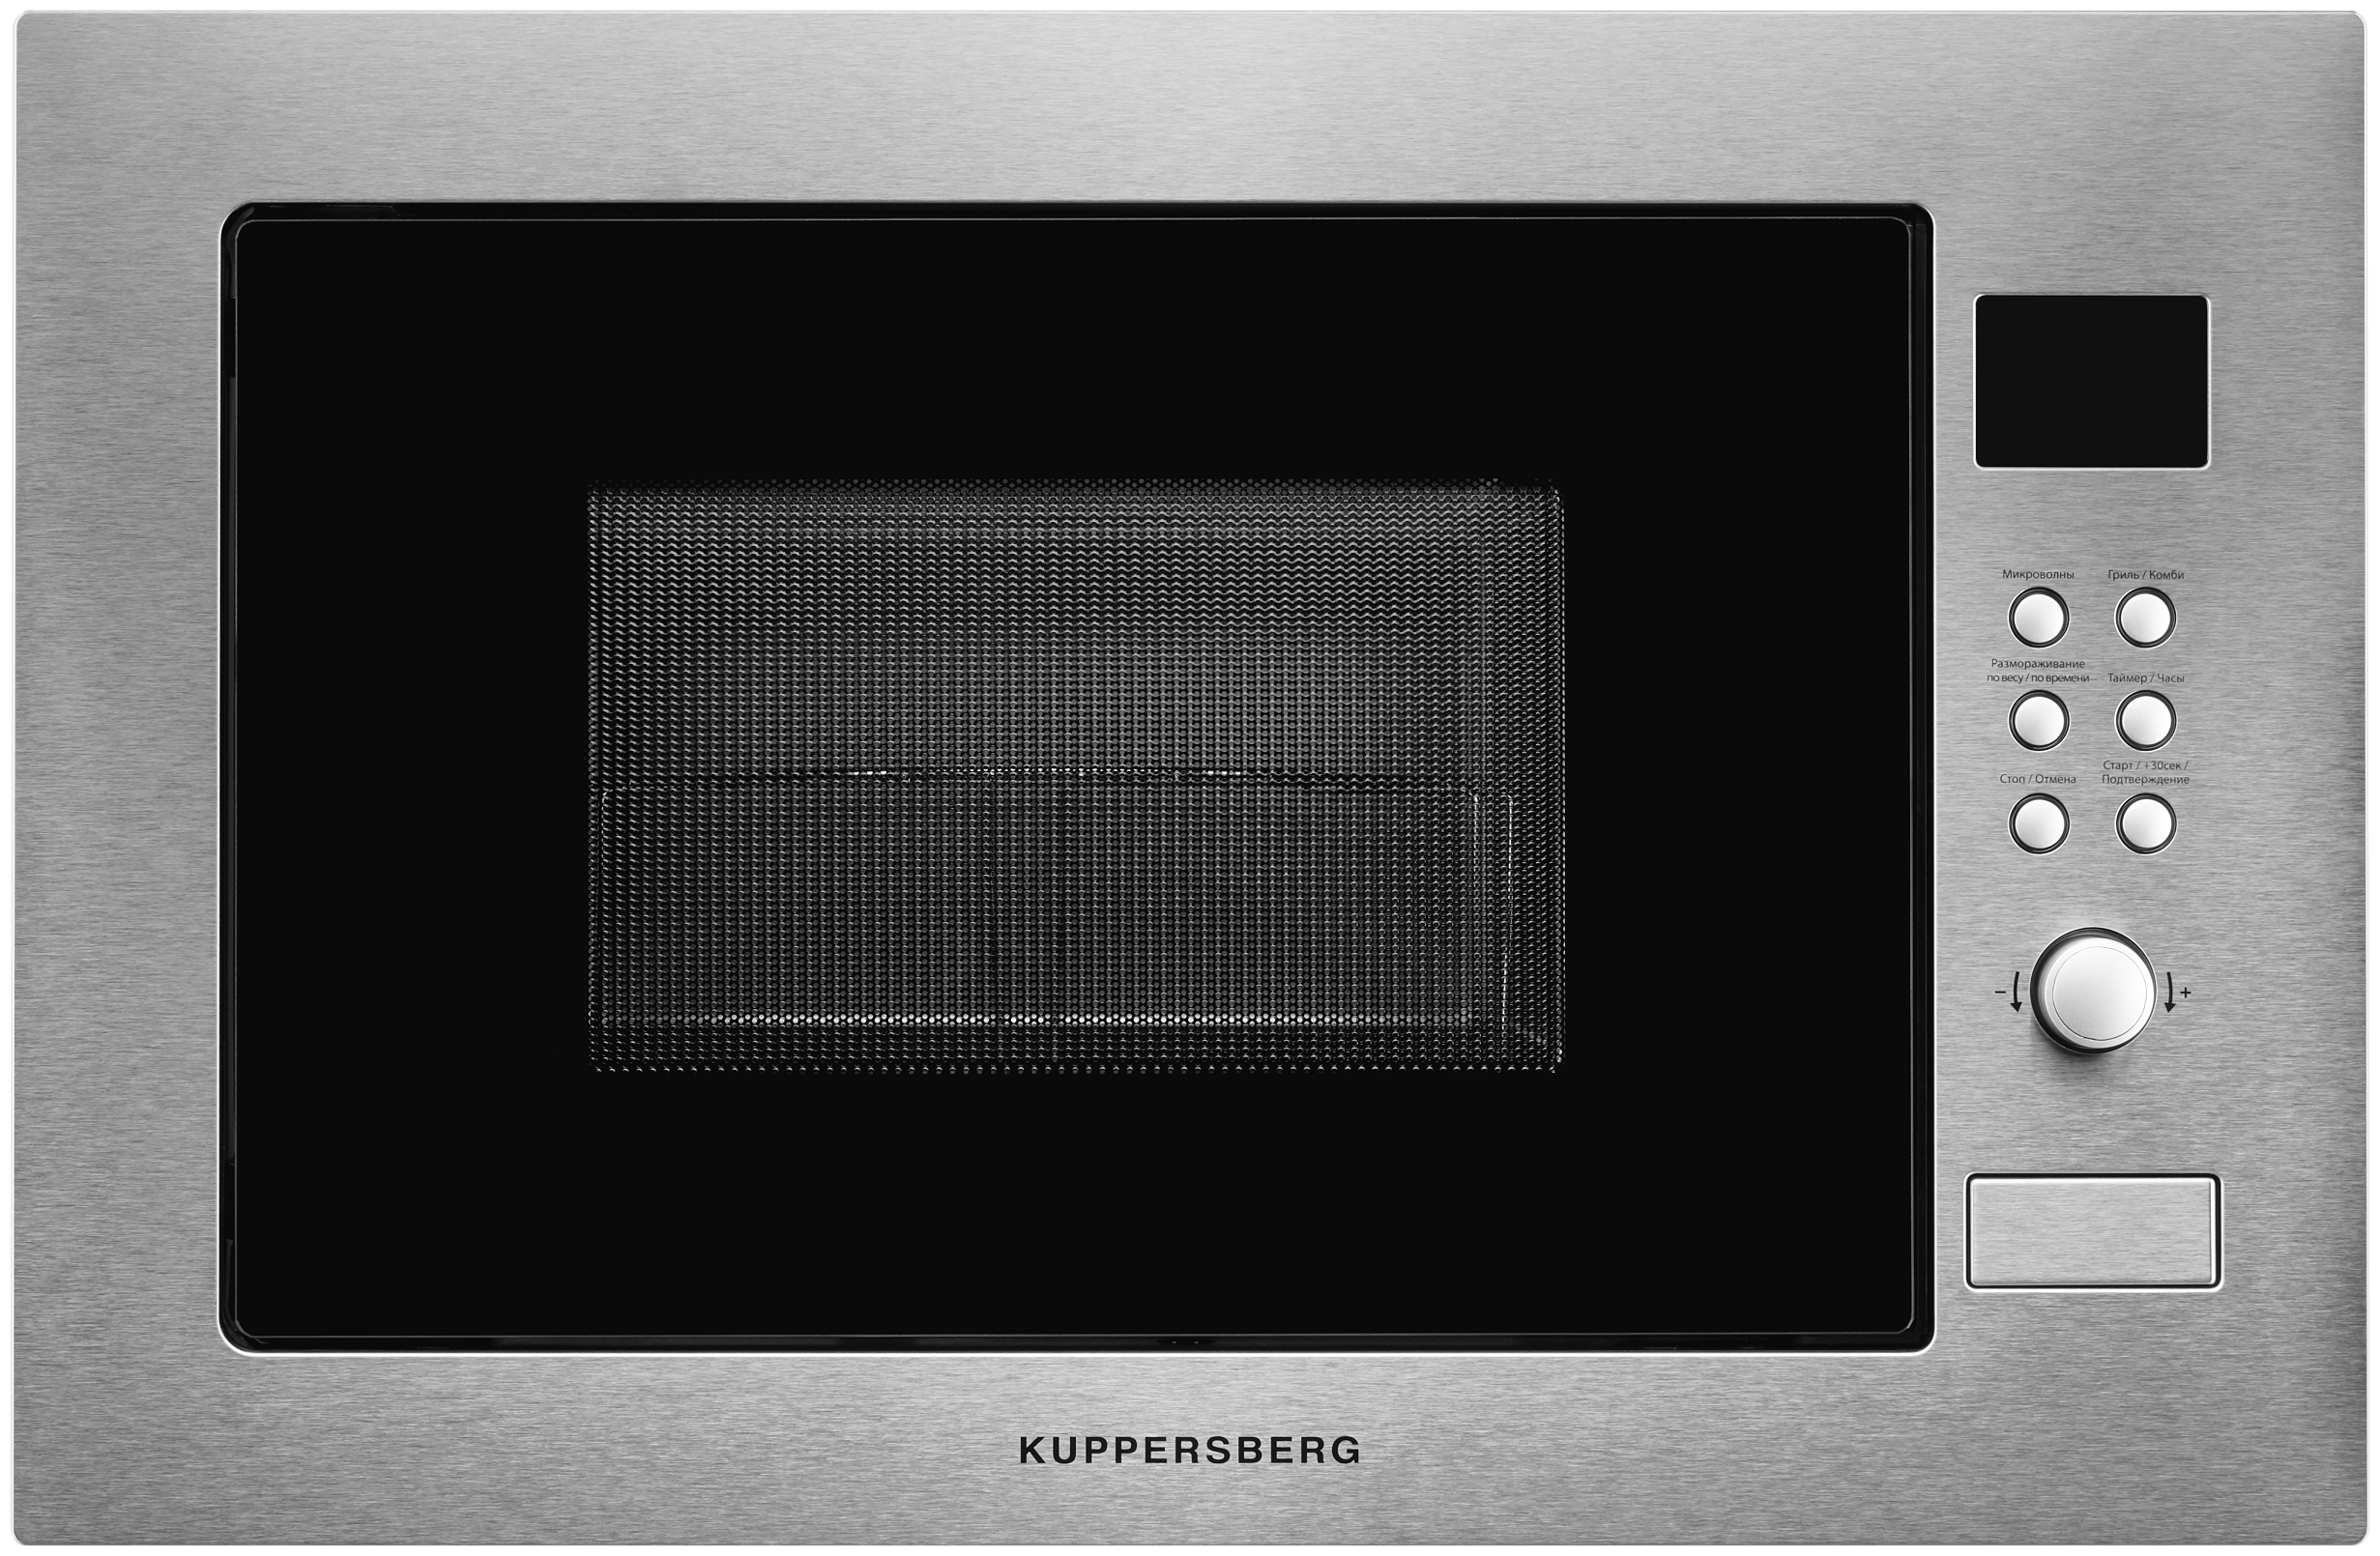 Микроволновая печь встраиваемая Kuppersberg HMW 635 X 25 л, 900 Вт, серебристый (HMW 635 X)